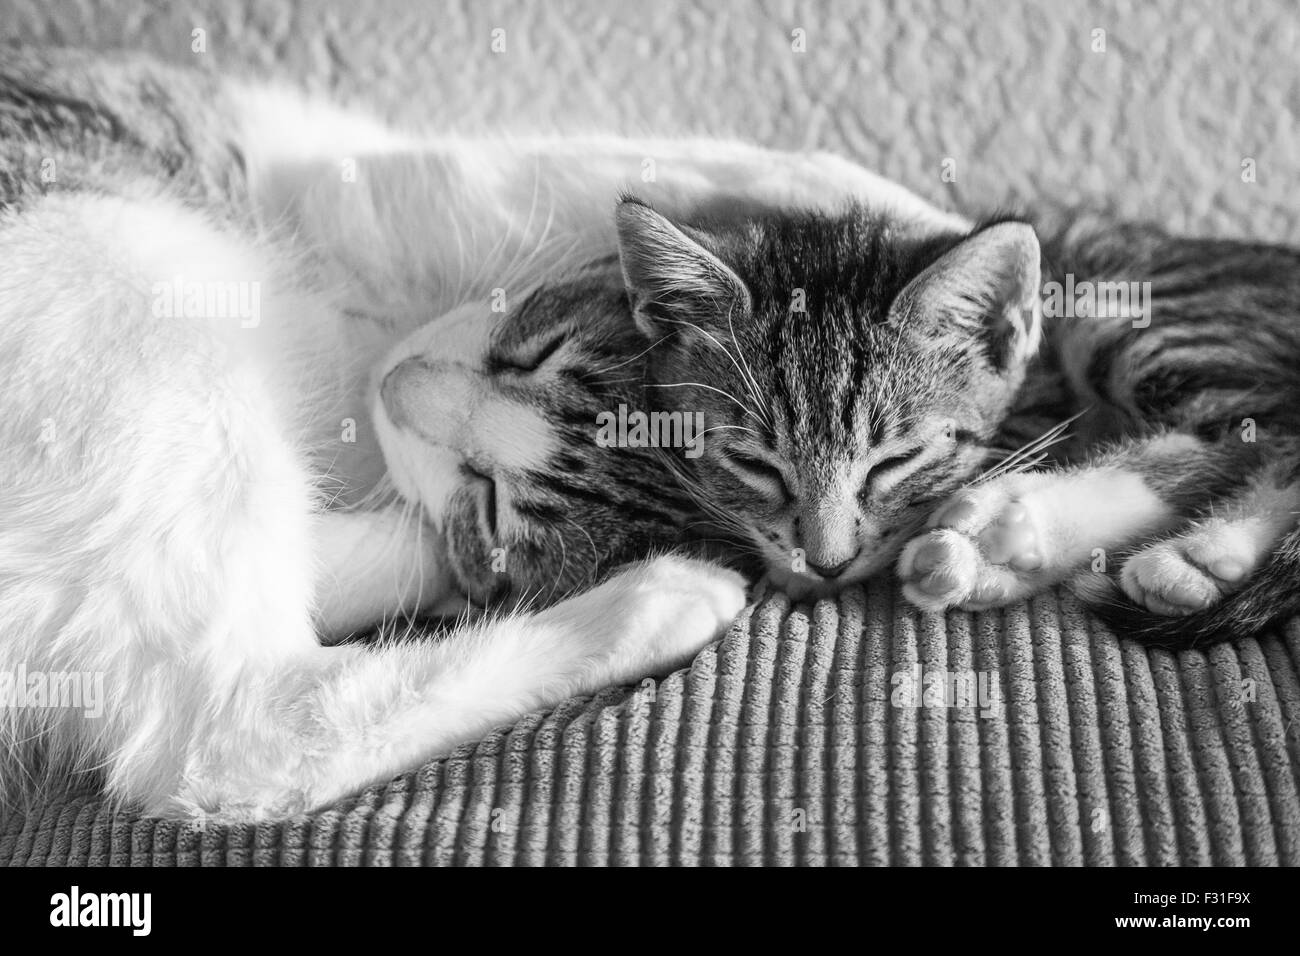 Gato adulto y gatito durmiendo juntos. Foto de stock